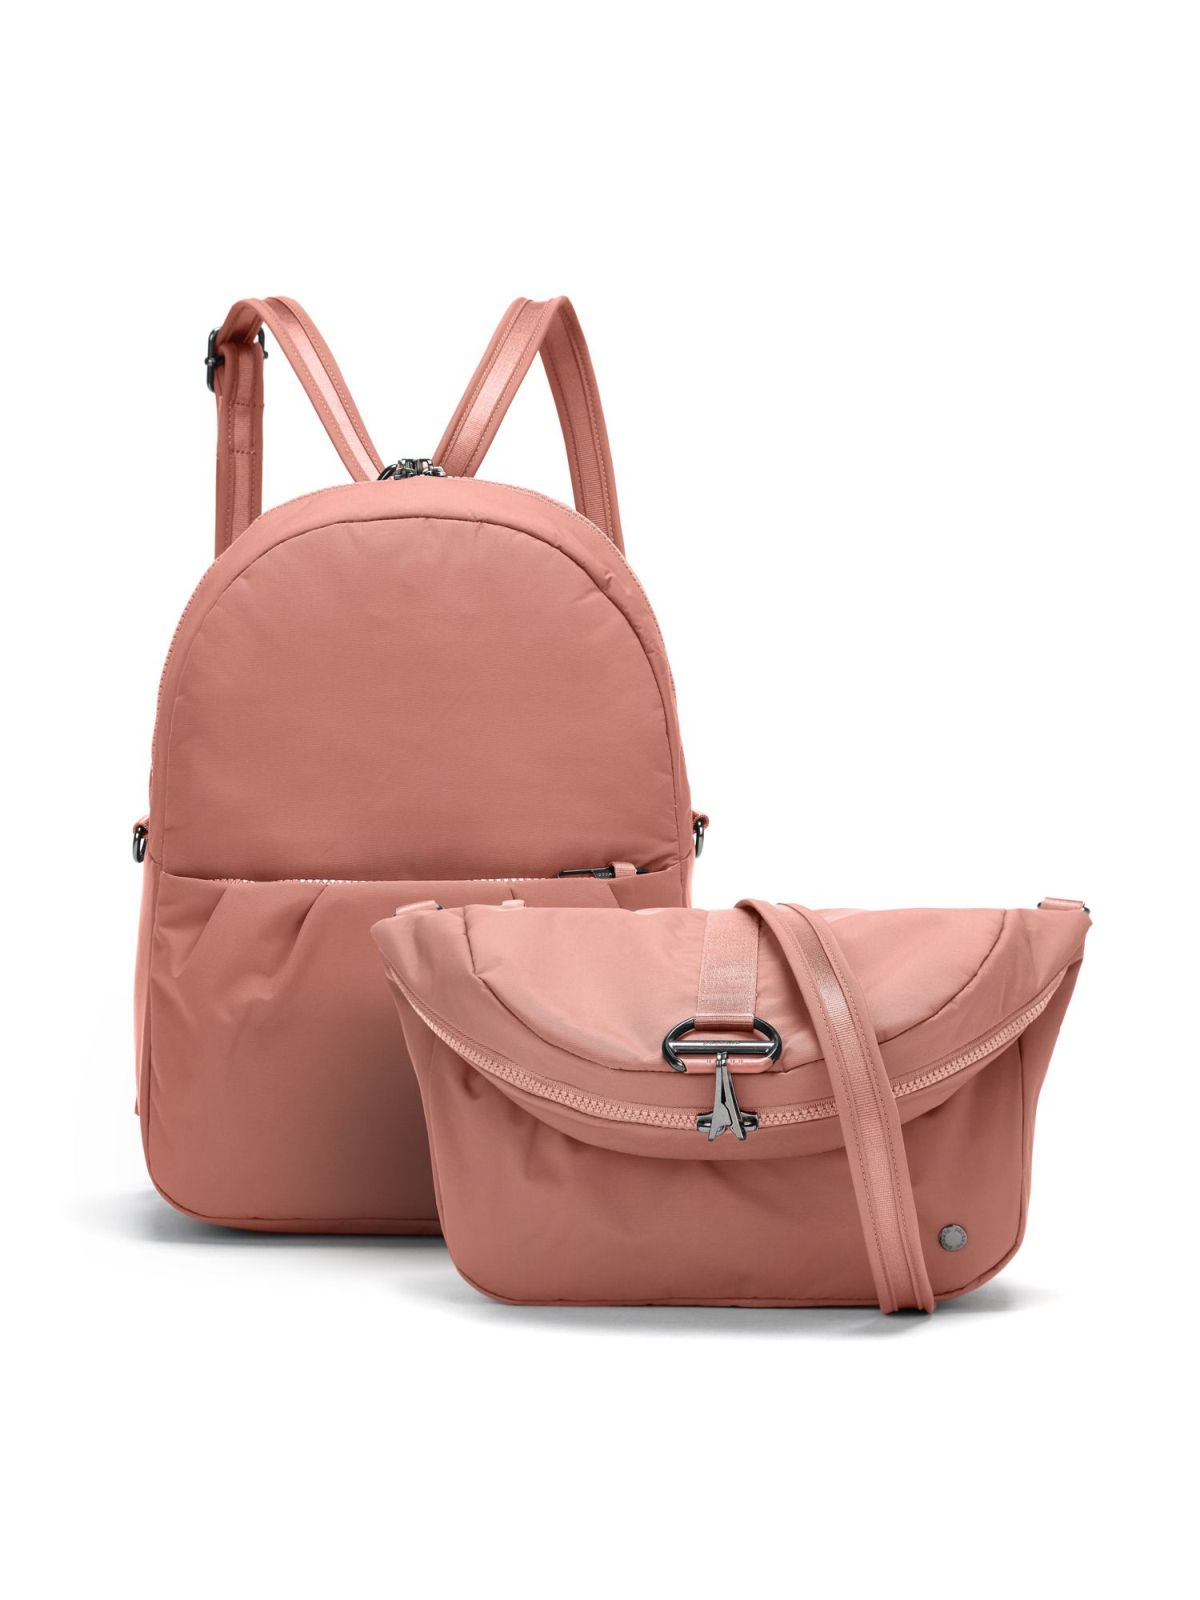 Pacsafe Citysafe CX Econyl® 2 viename kuprinė/krepšys nuo vagystės – rožinė